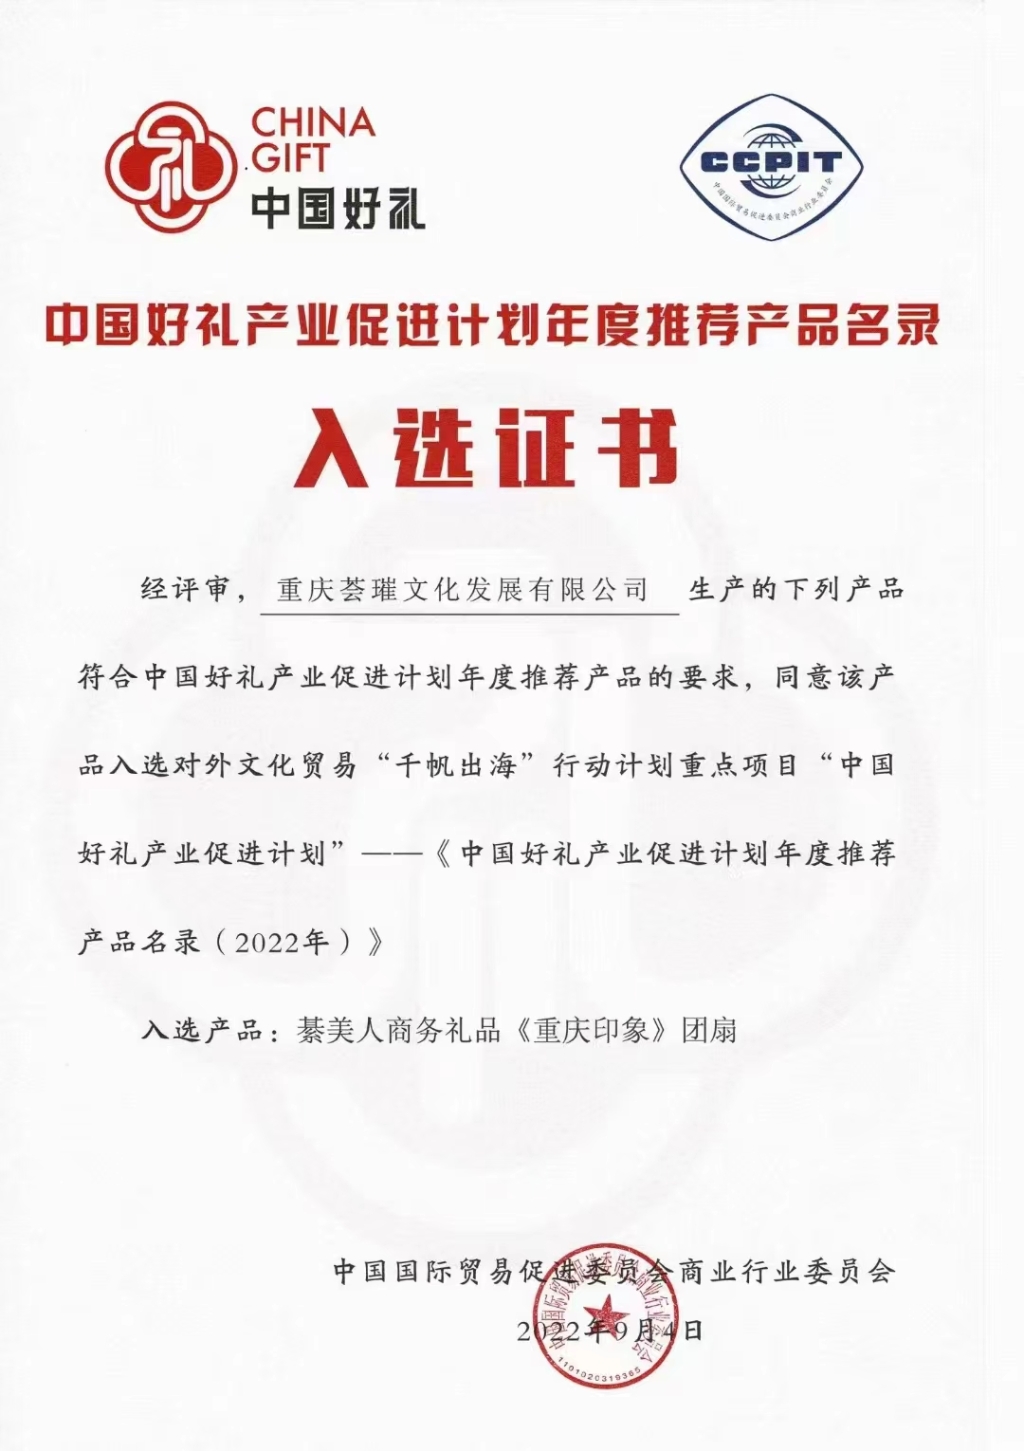 《中国好礼产业促进计划2022年度推荐产品名录》入选证书 綦美人供图